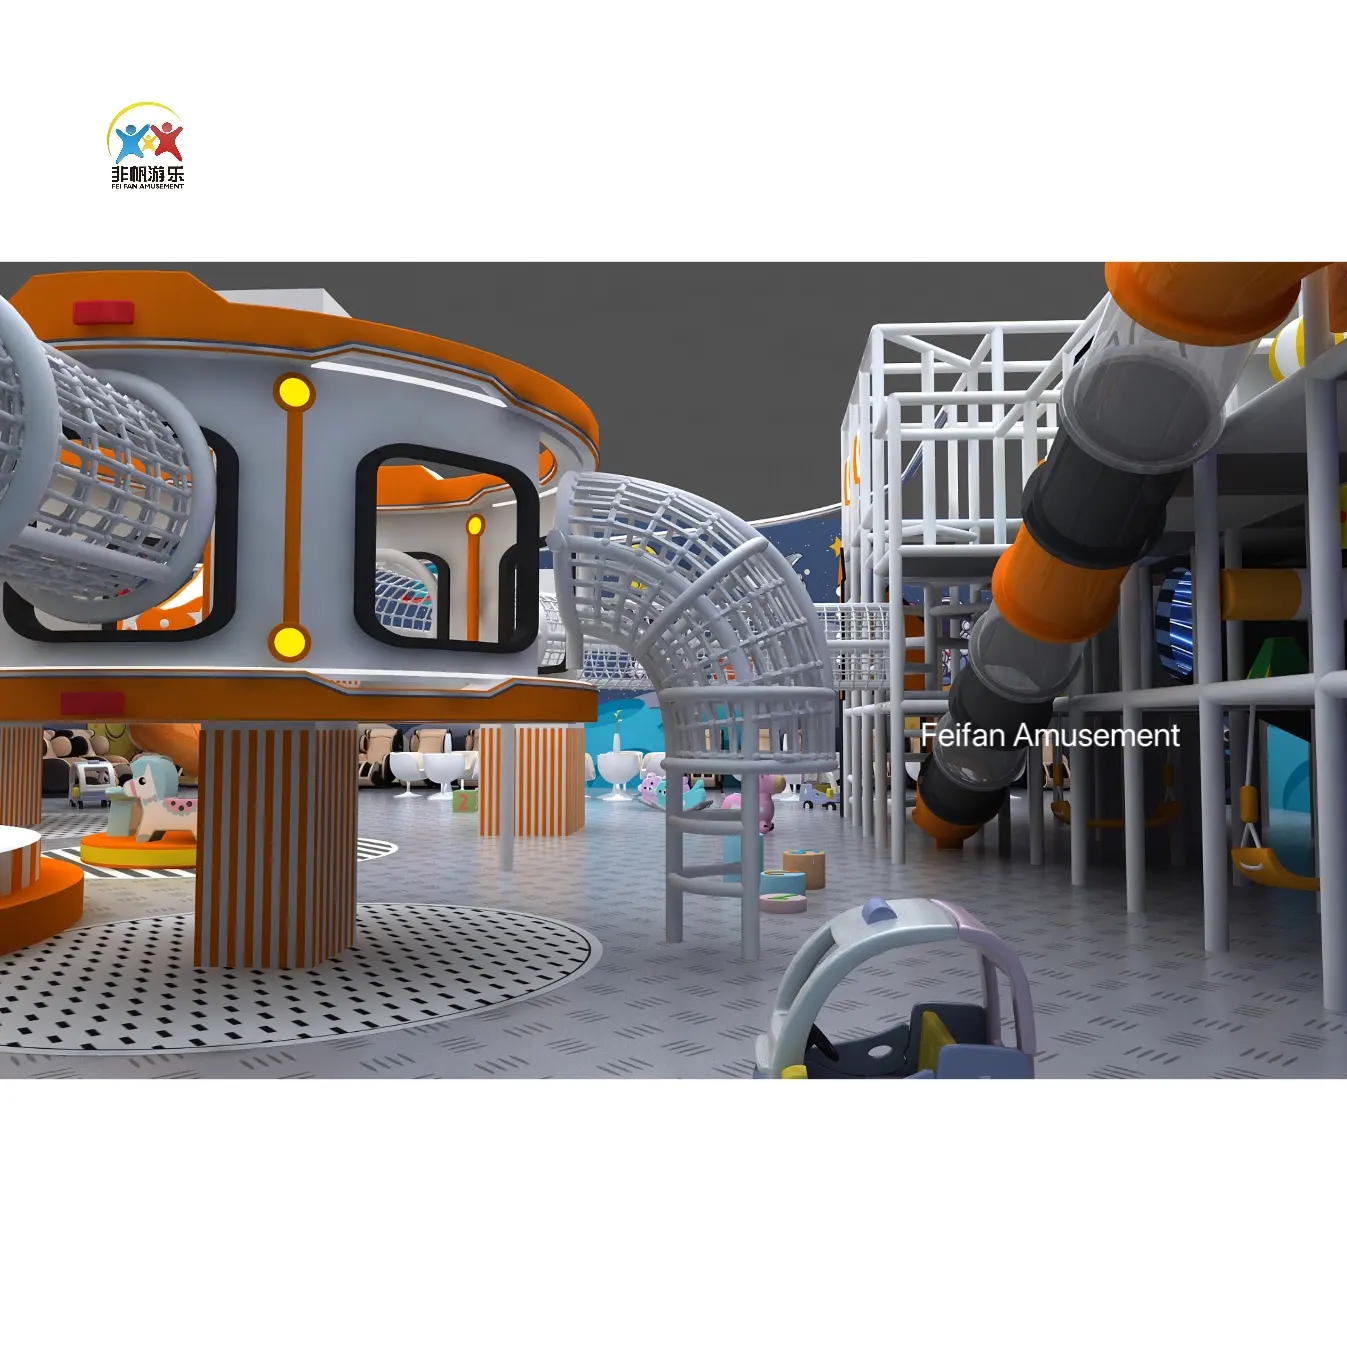 Maravilloso patio de recreo interior grande para niños Instalación de Parque de Atracciones suave con juegos para jugar y divertirse